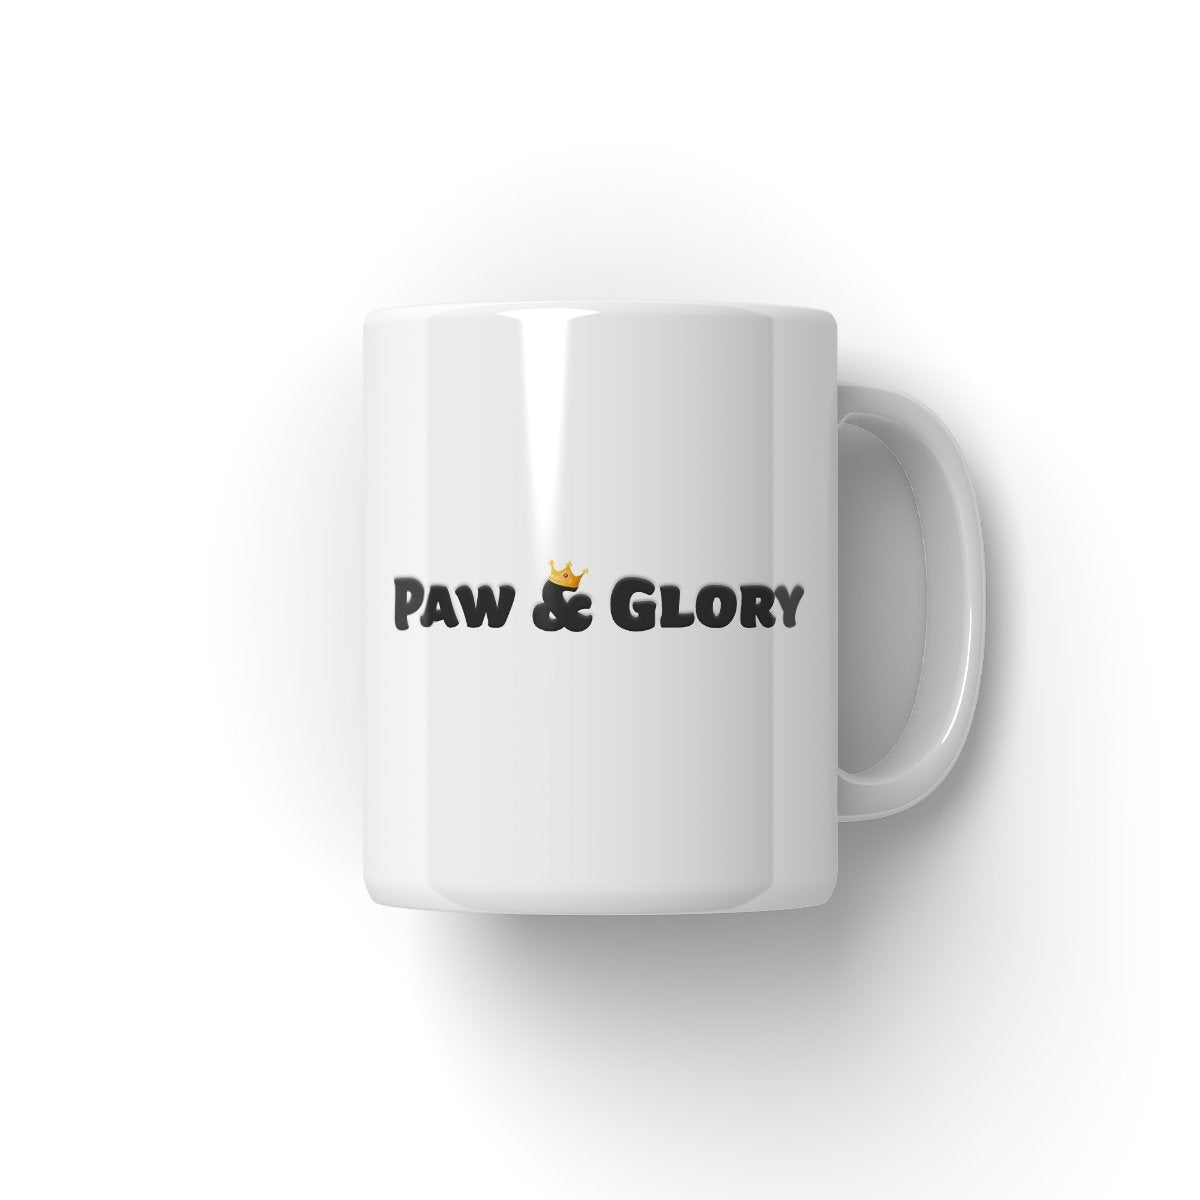 The Will (Stranger Things Inspired) Paw & Glory, pawandglory, dog on mug, personalised dog mug, custom mug with cats, mug with dog picture, personalised pet mugs, personalised mugs with dogs, Pet Portraits Mug